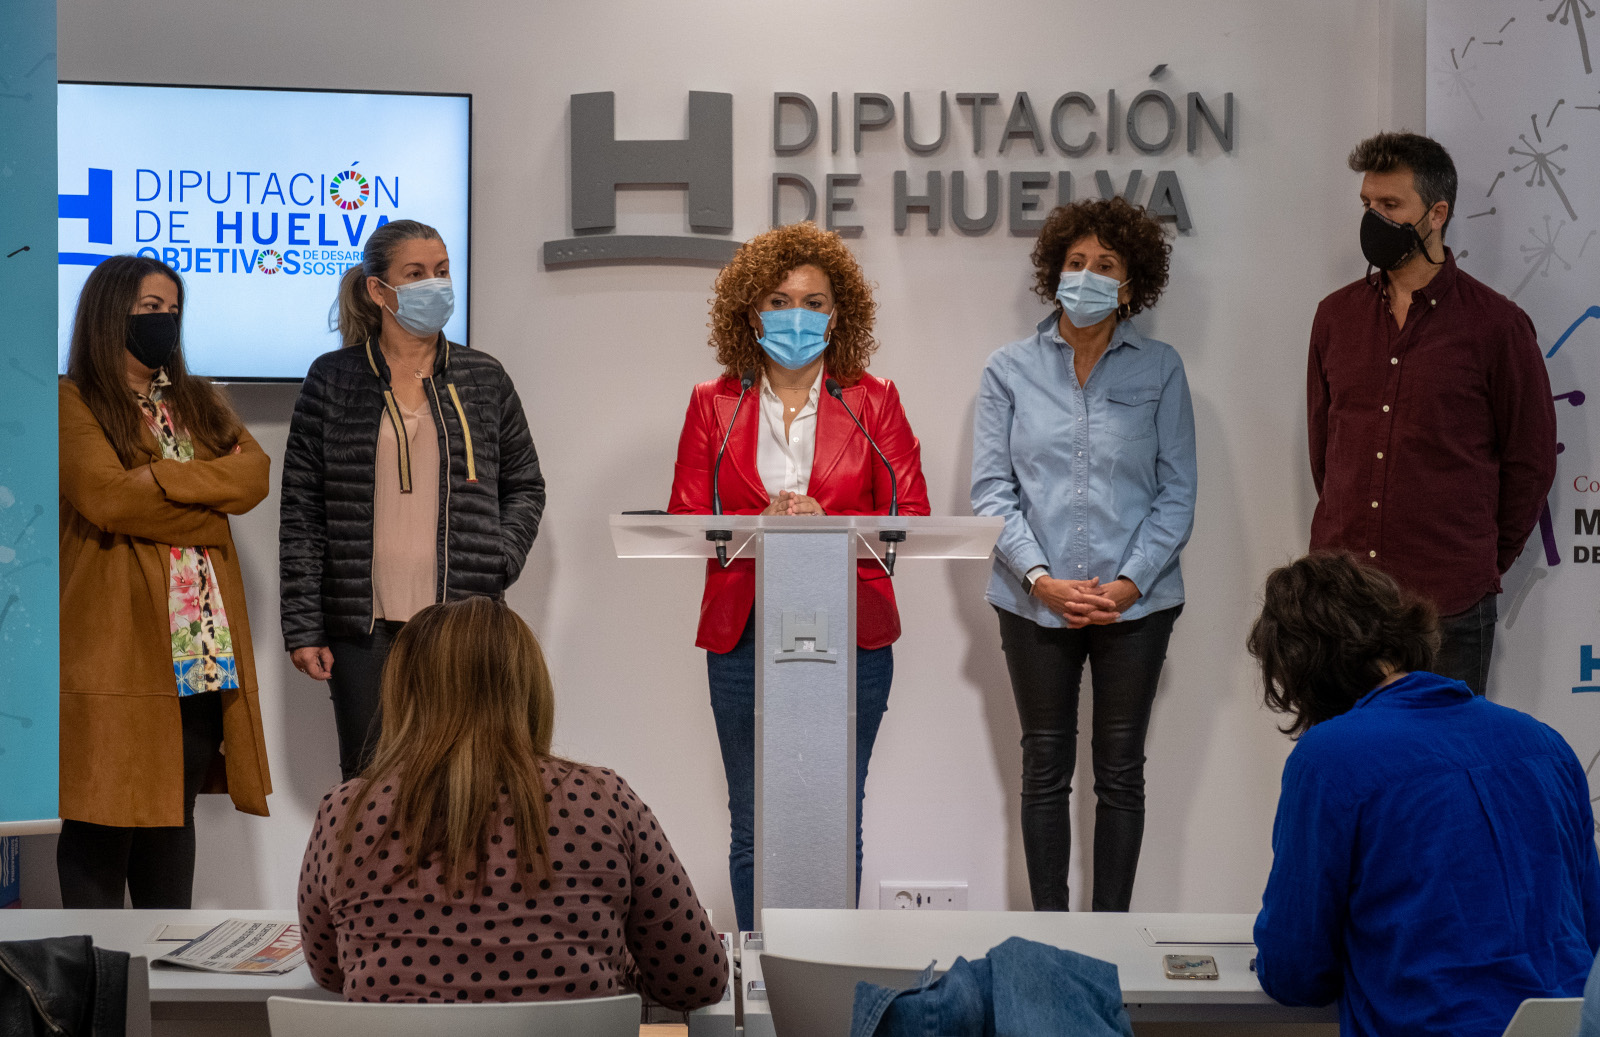 Diputación divulga la Memoria Democrática entre el alumnado de secundaria y bachillerato de la provincia de Huelva